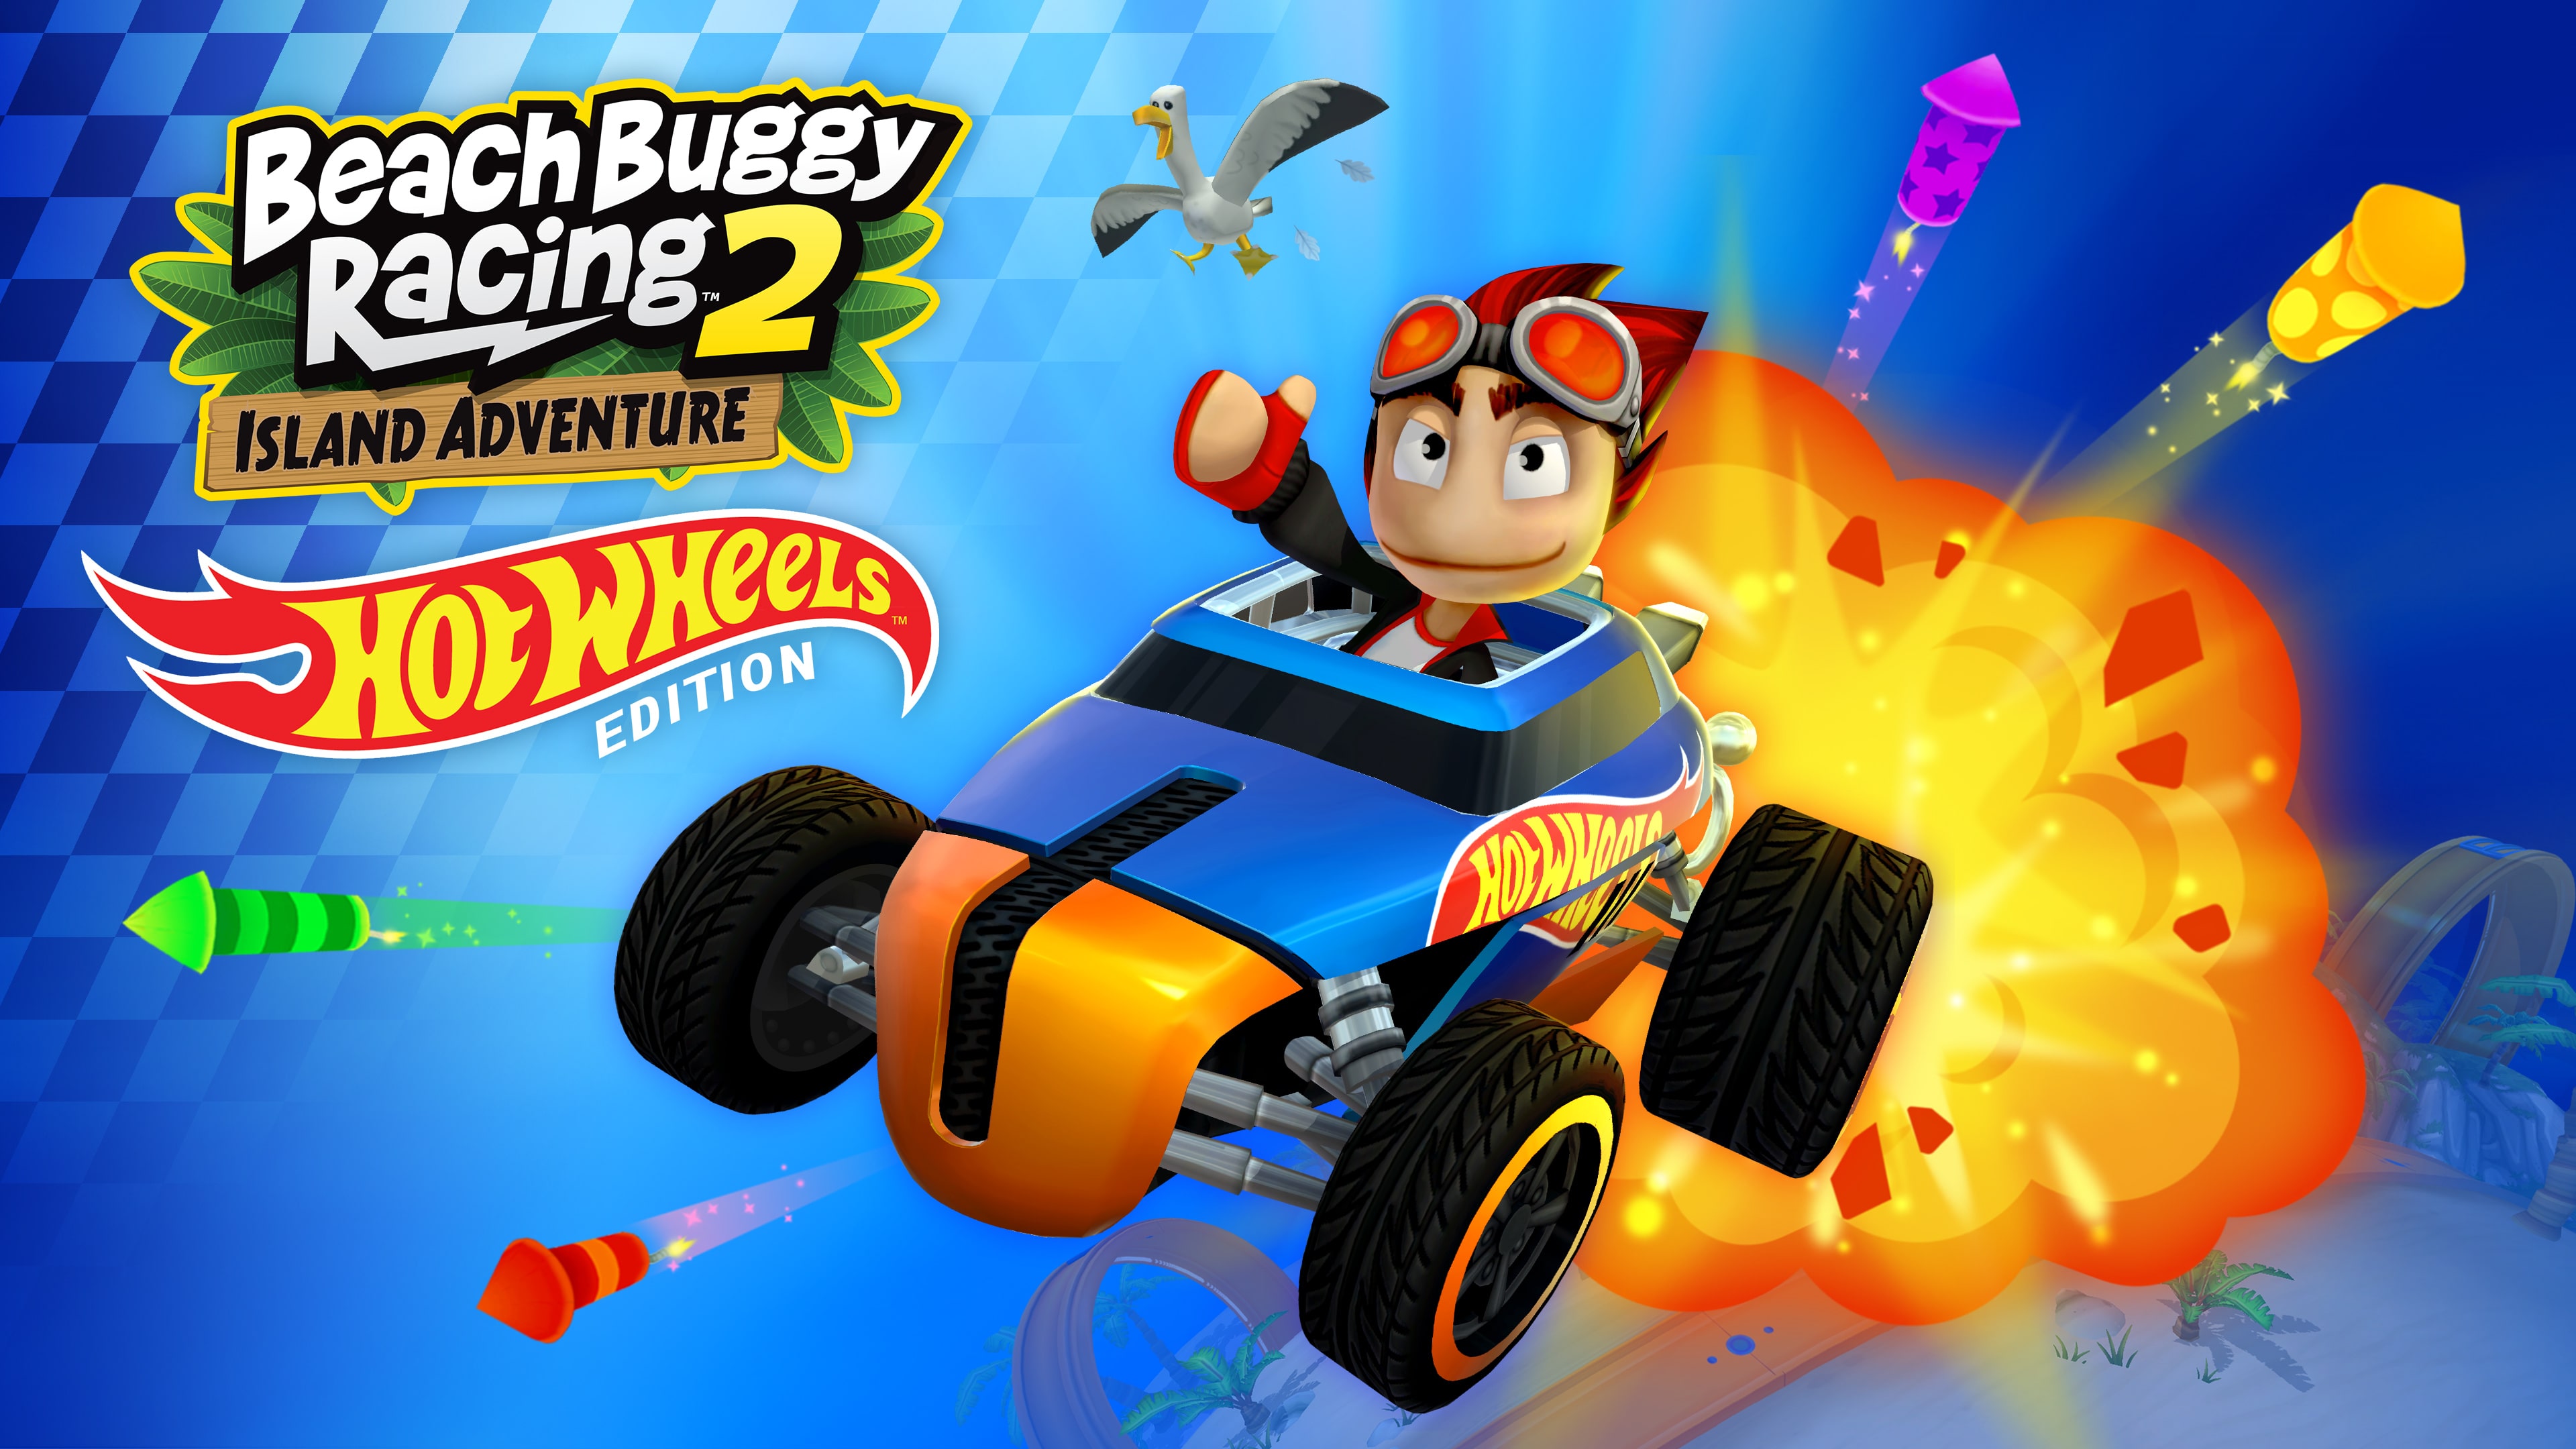 is beach buggy racing 2 online